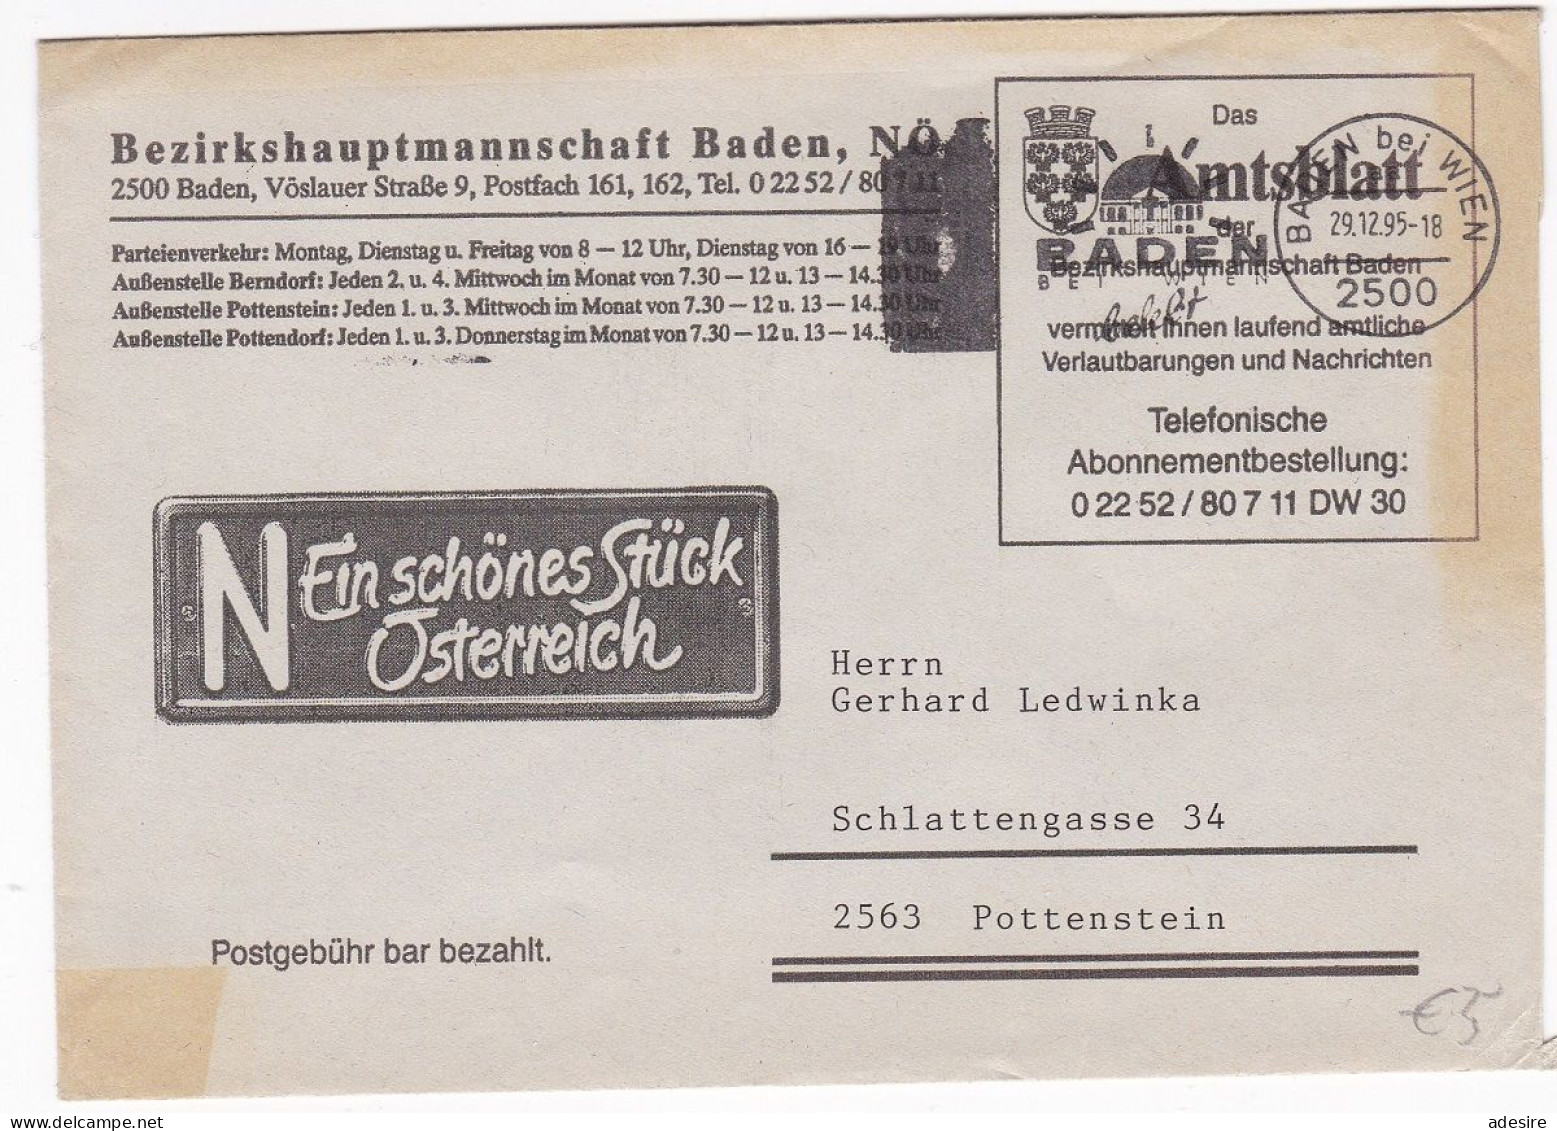 ÖSTERREICH - Firmenbrief Bezirkshauptmannschaft Baden NÖ - Das Amtsblatt Baden - Omslagen